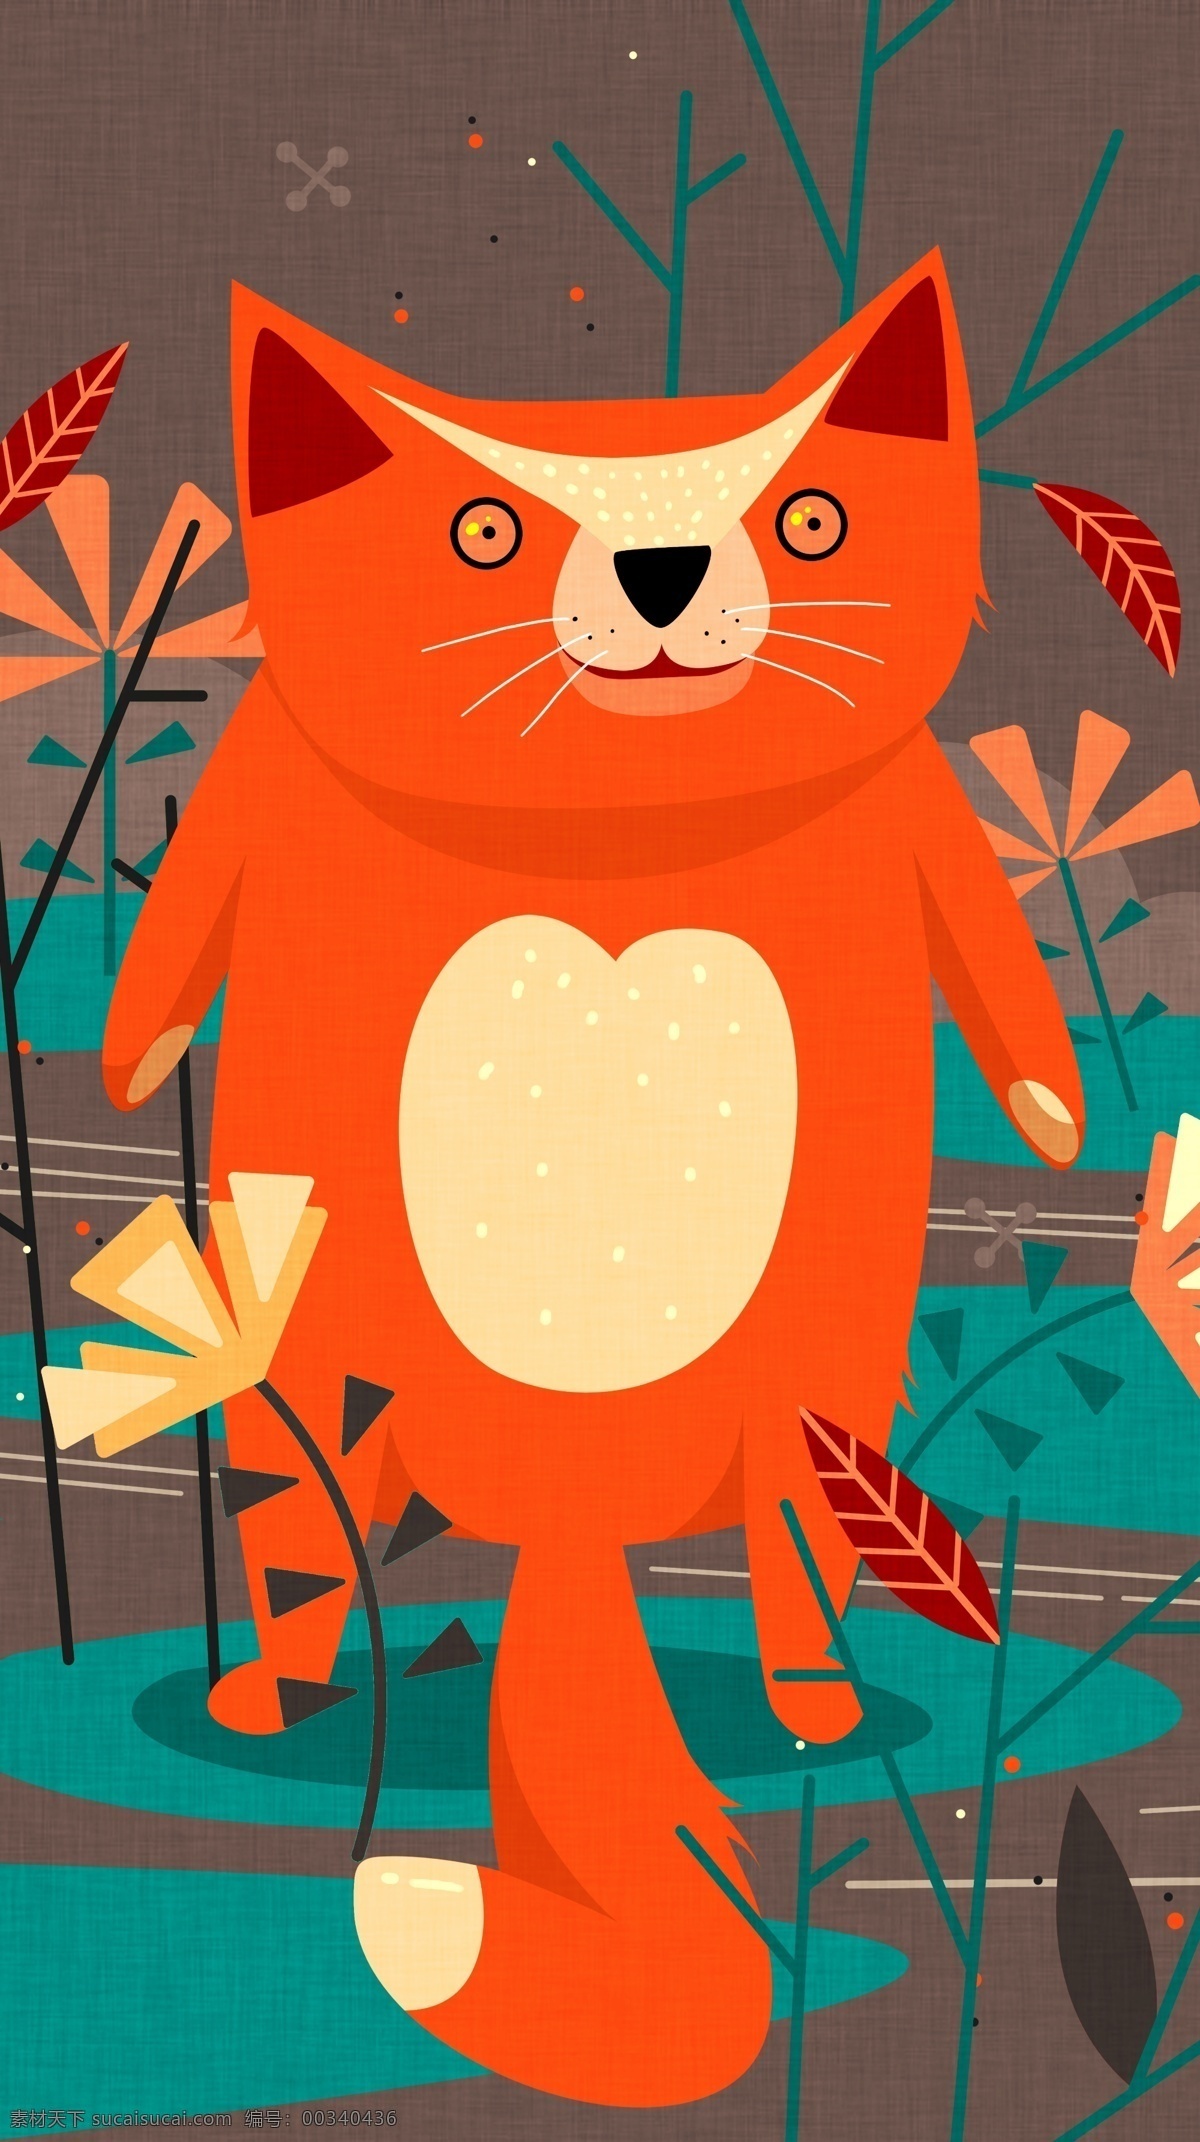 红色 小 狐狸 自然 印记 趋势 插画 植物 草地 高清图 花 简洁画面 tif格式